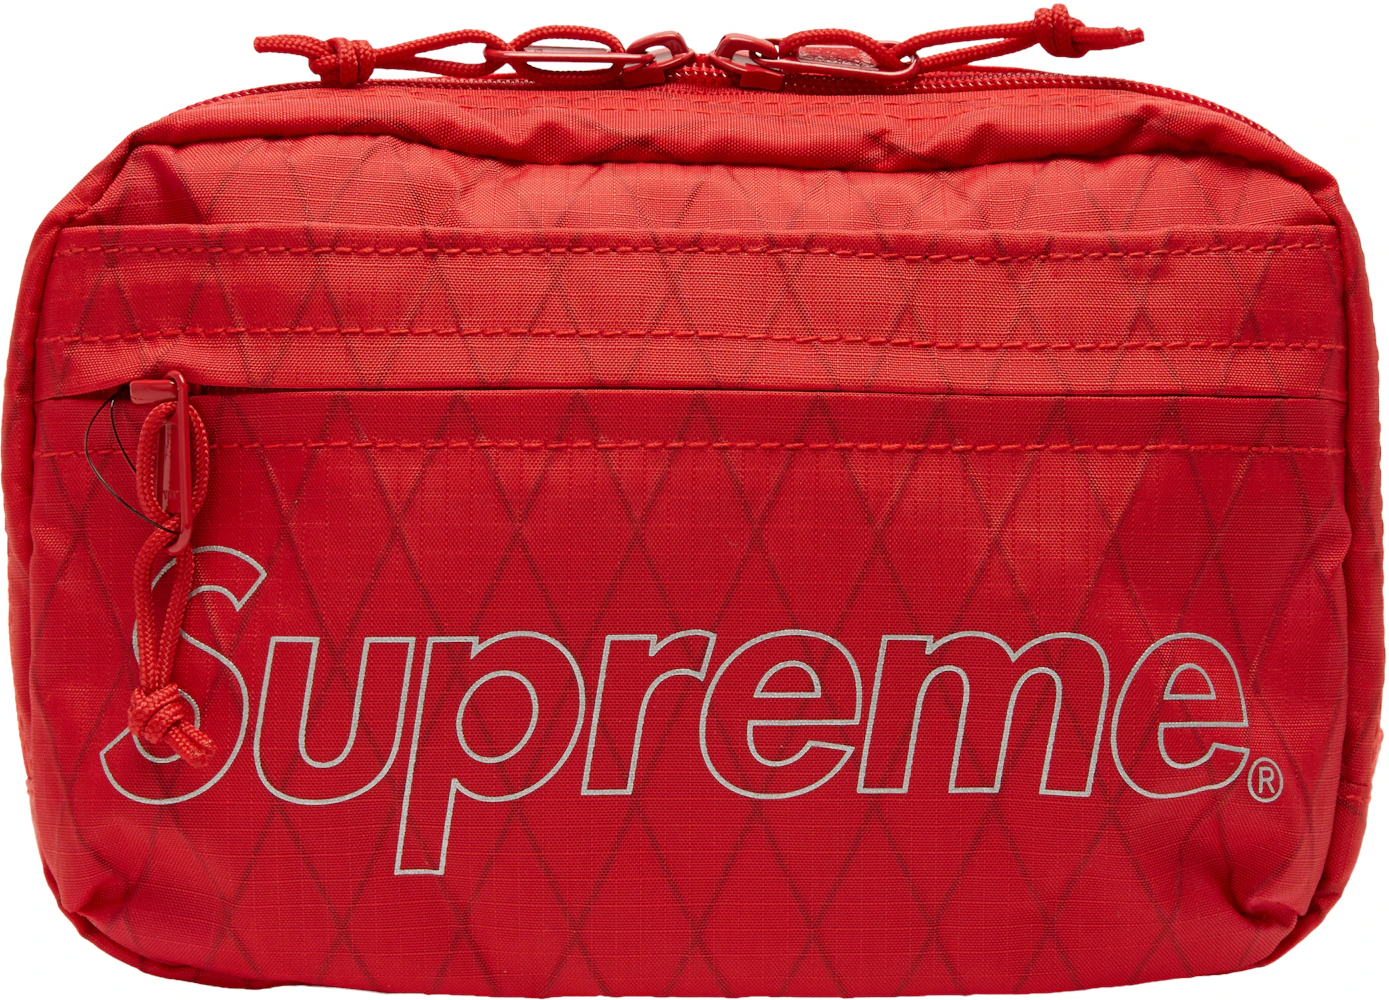 Buy Supreme Shoulder Bag 'Red' - FW18B10 RED